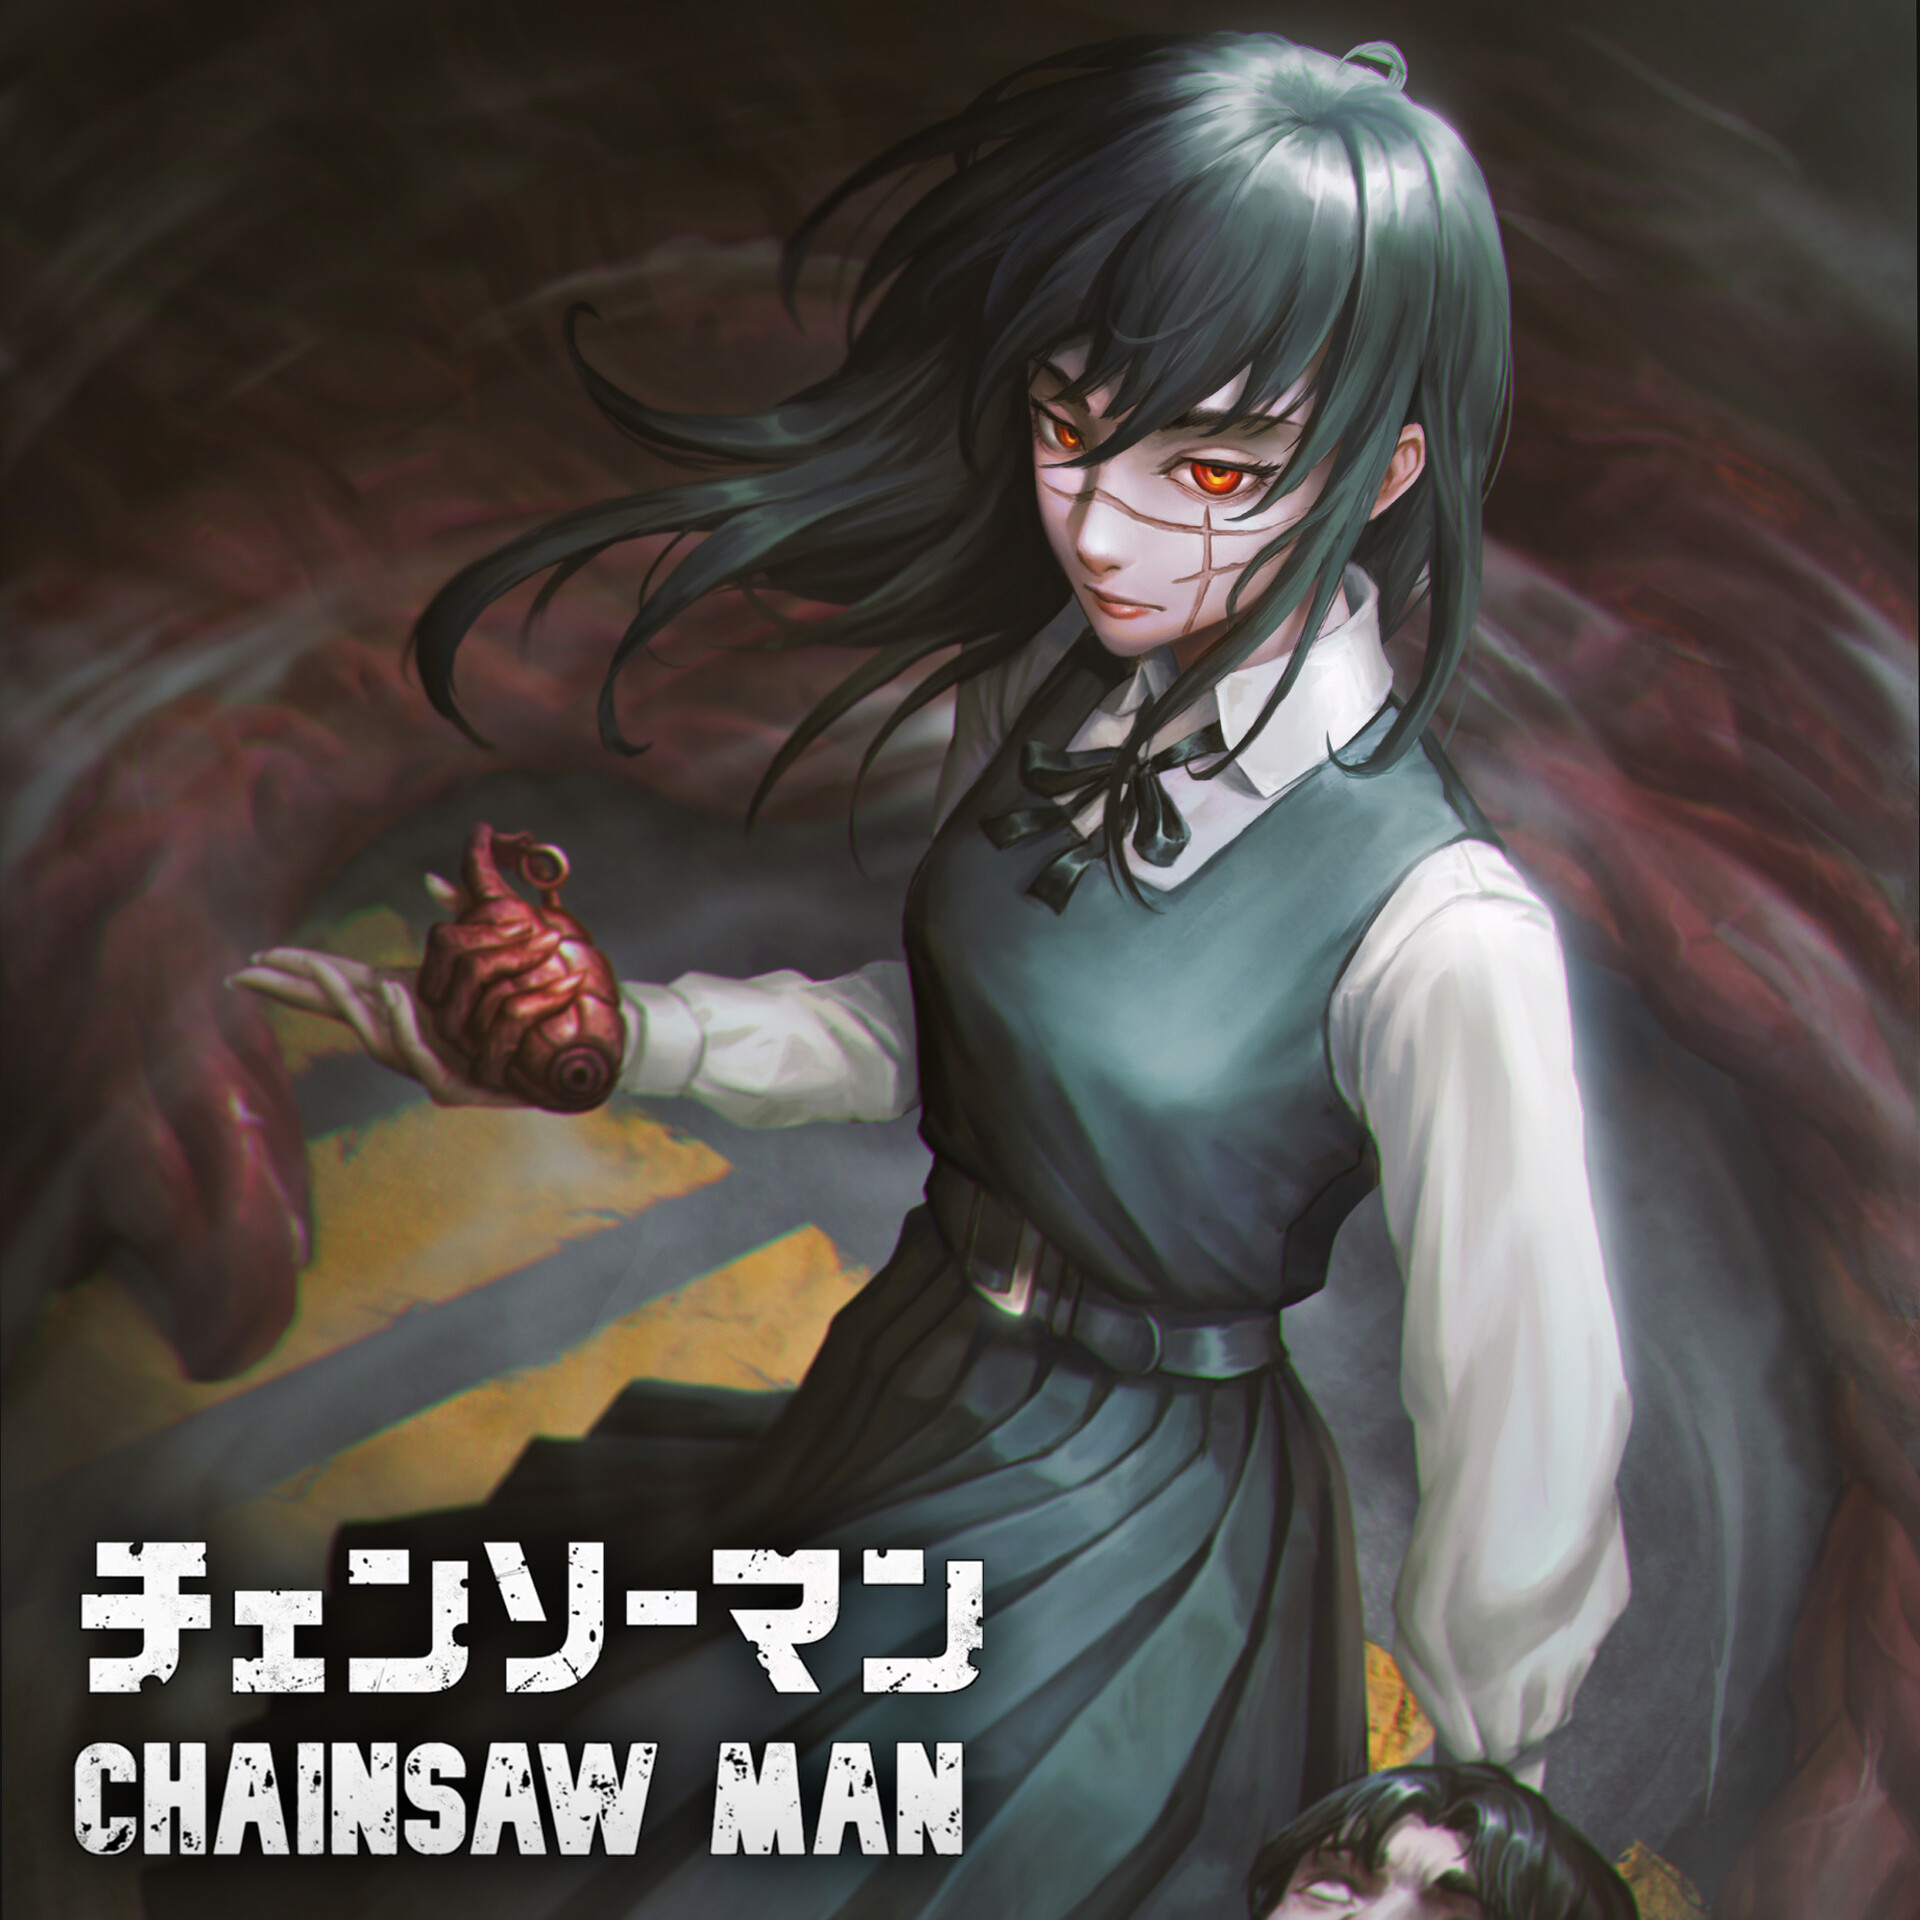 ArtStation - Chainsaw Man Manga Fanart